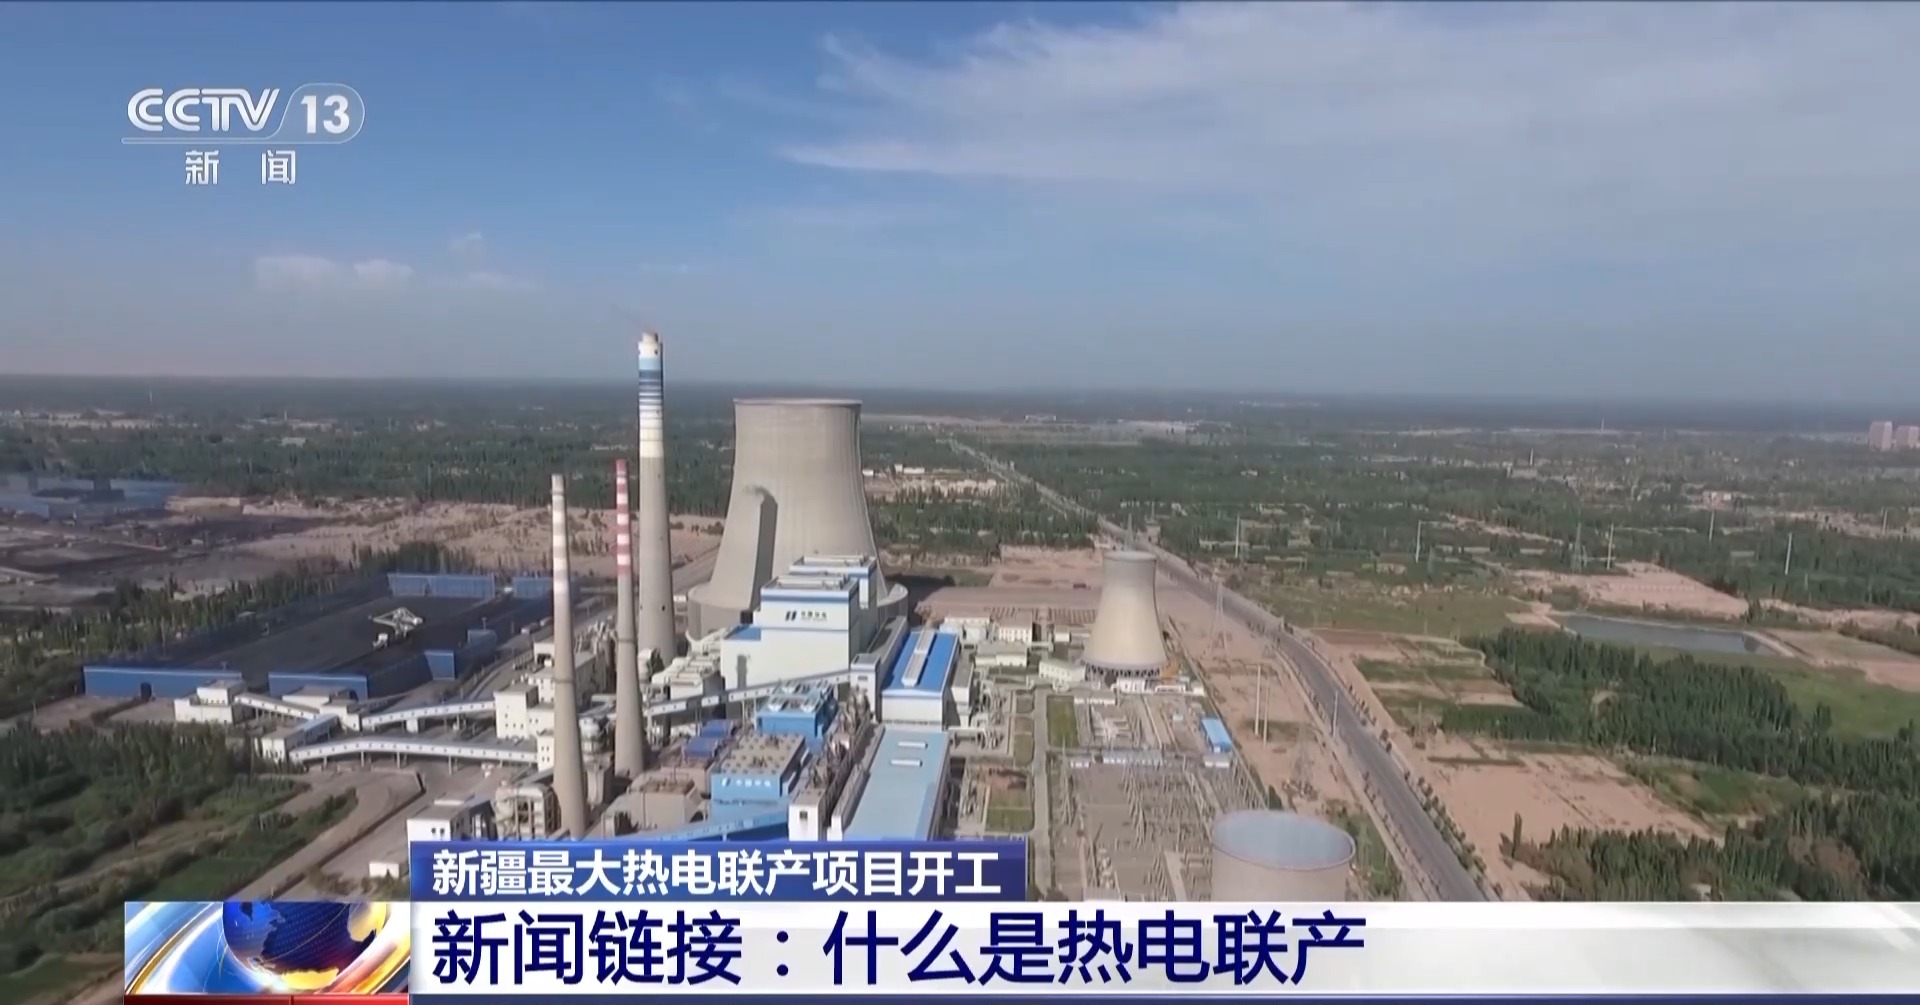 新增供热能力3200万平方米 新疆最大热电联产项目开工